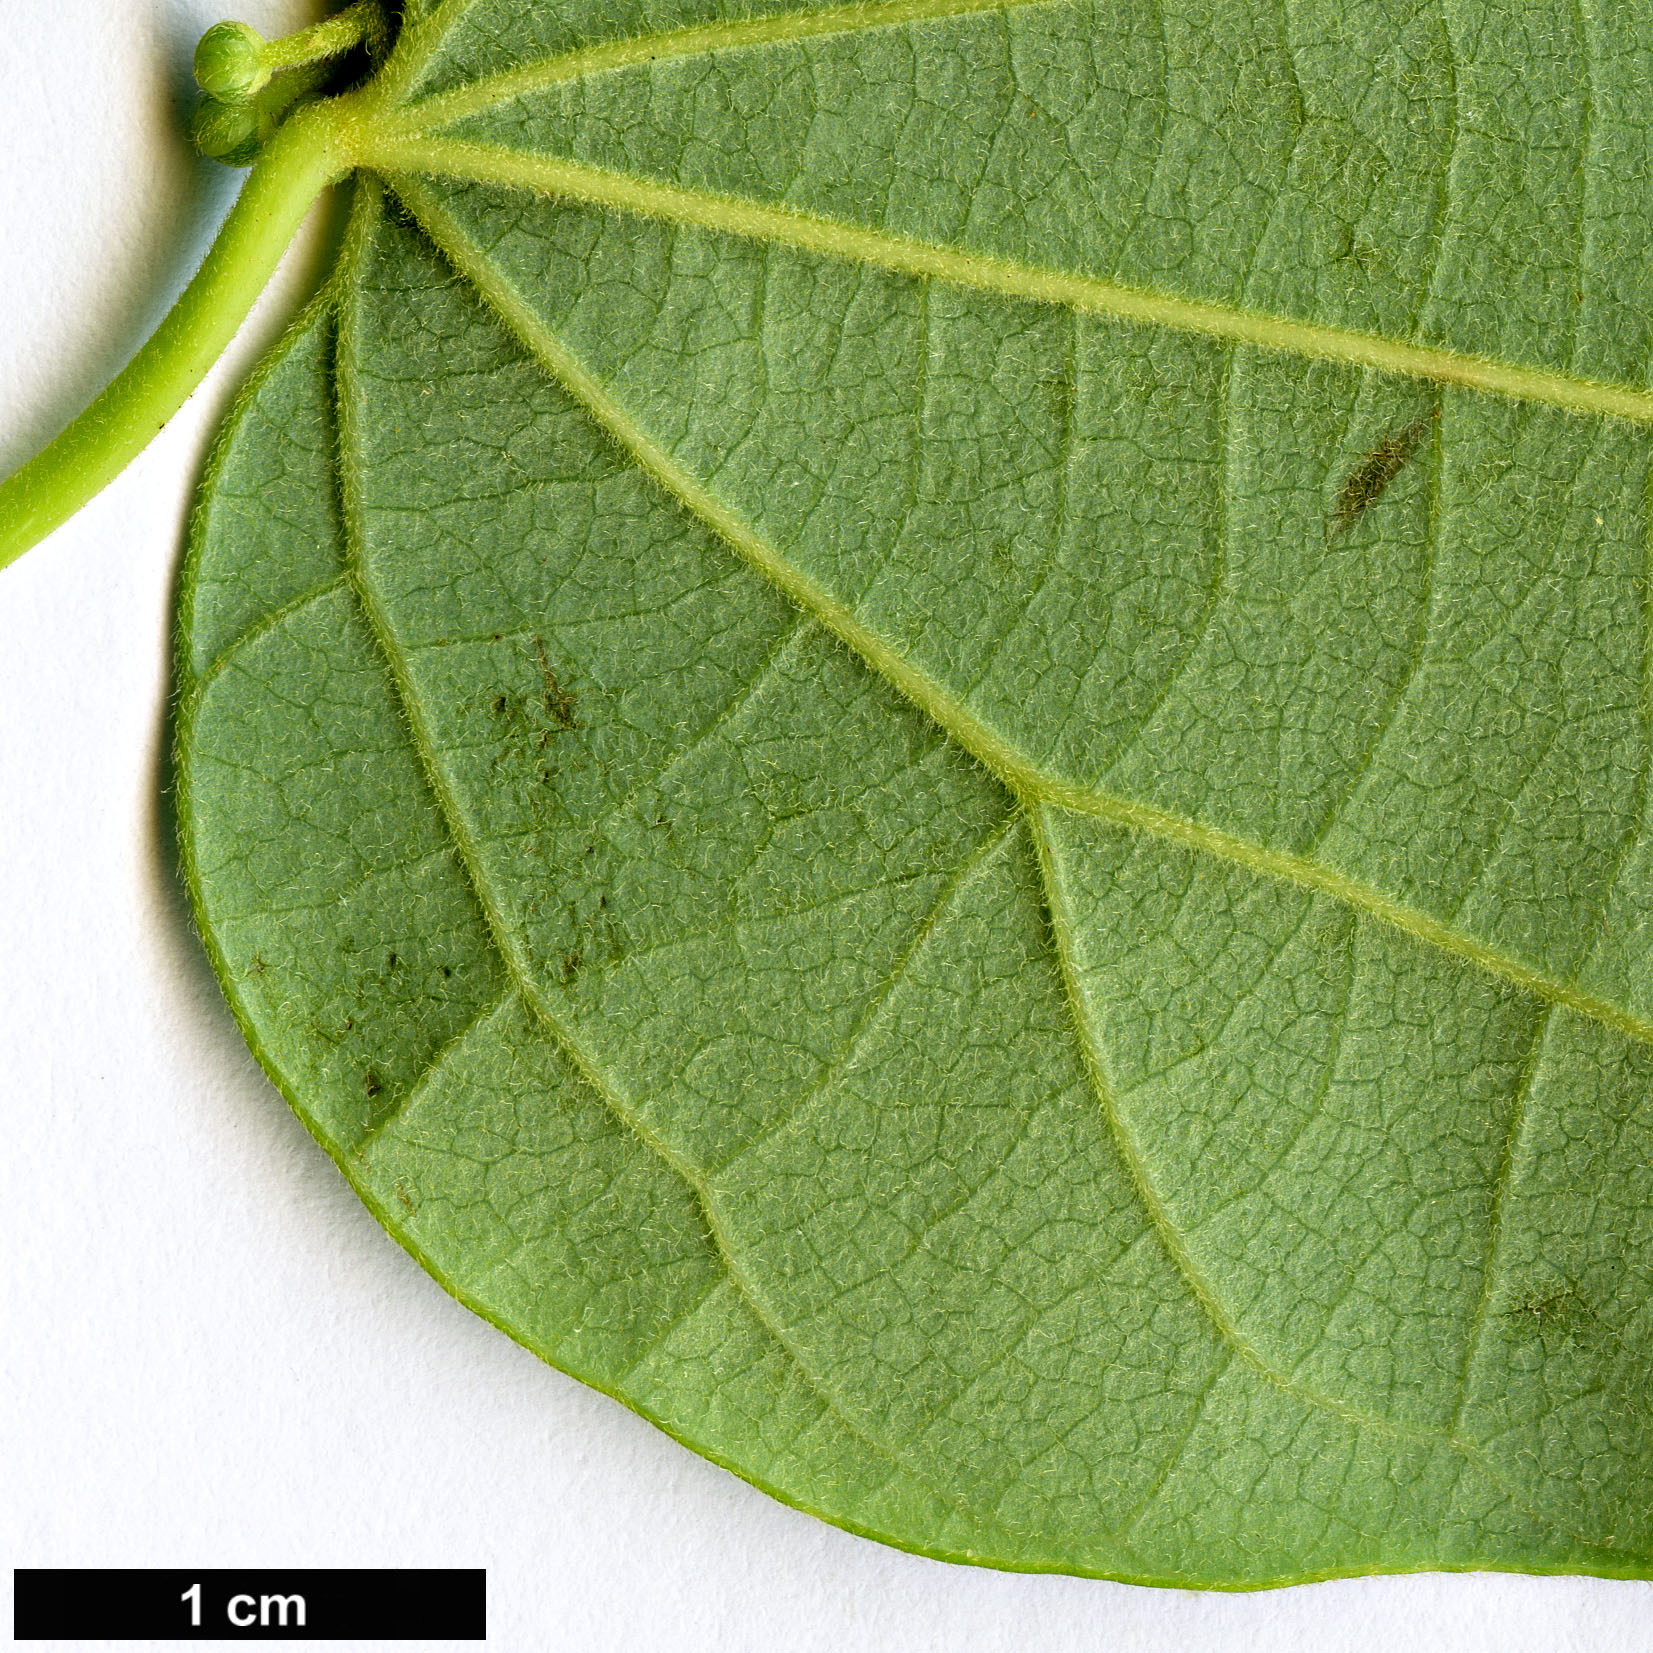 High resolution image: Family: Menispermaceae - Genus: Sinomenium - Taxon: acutum